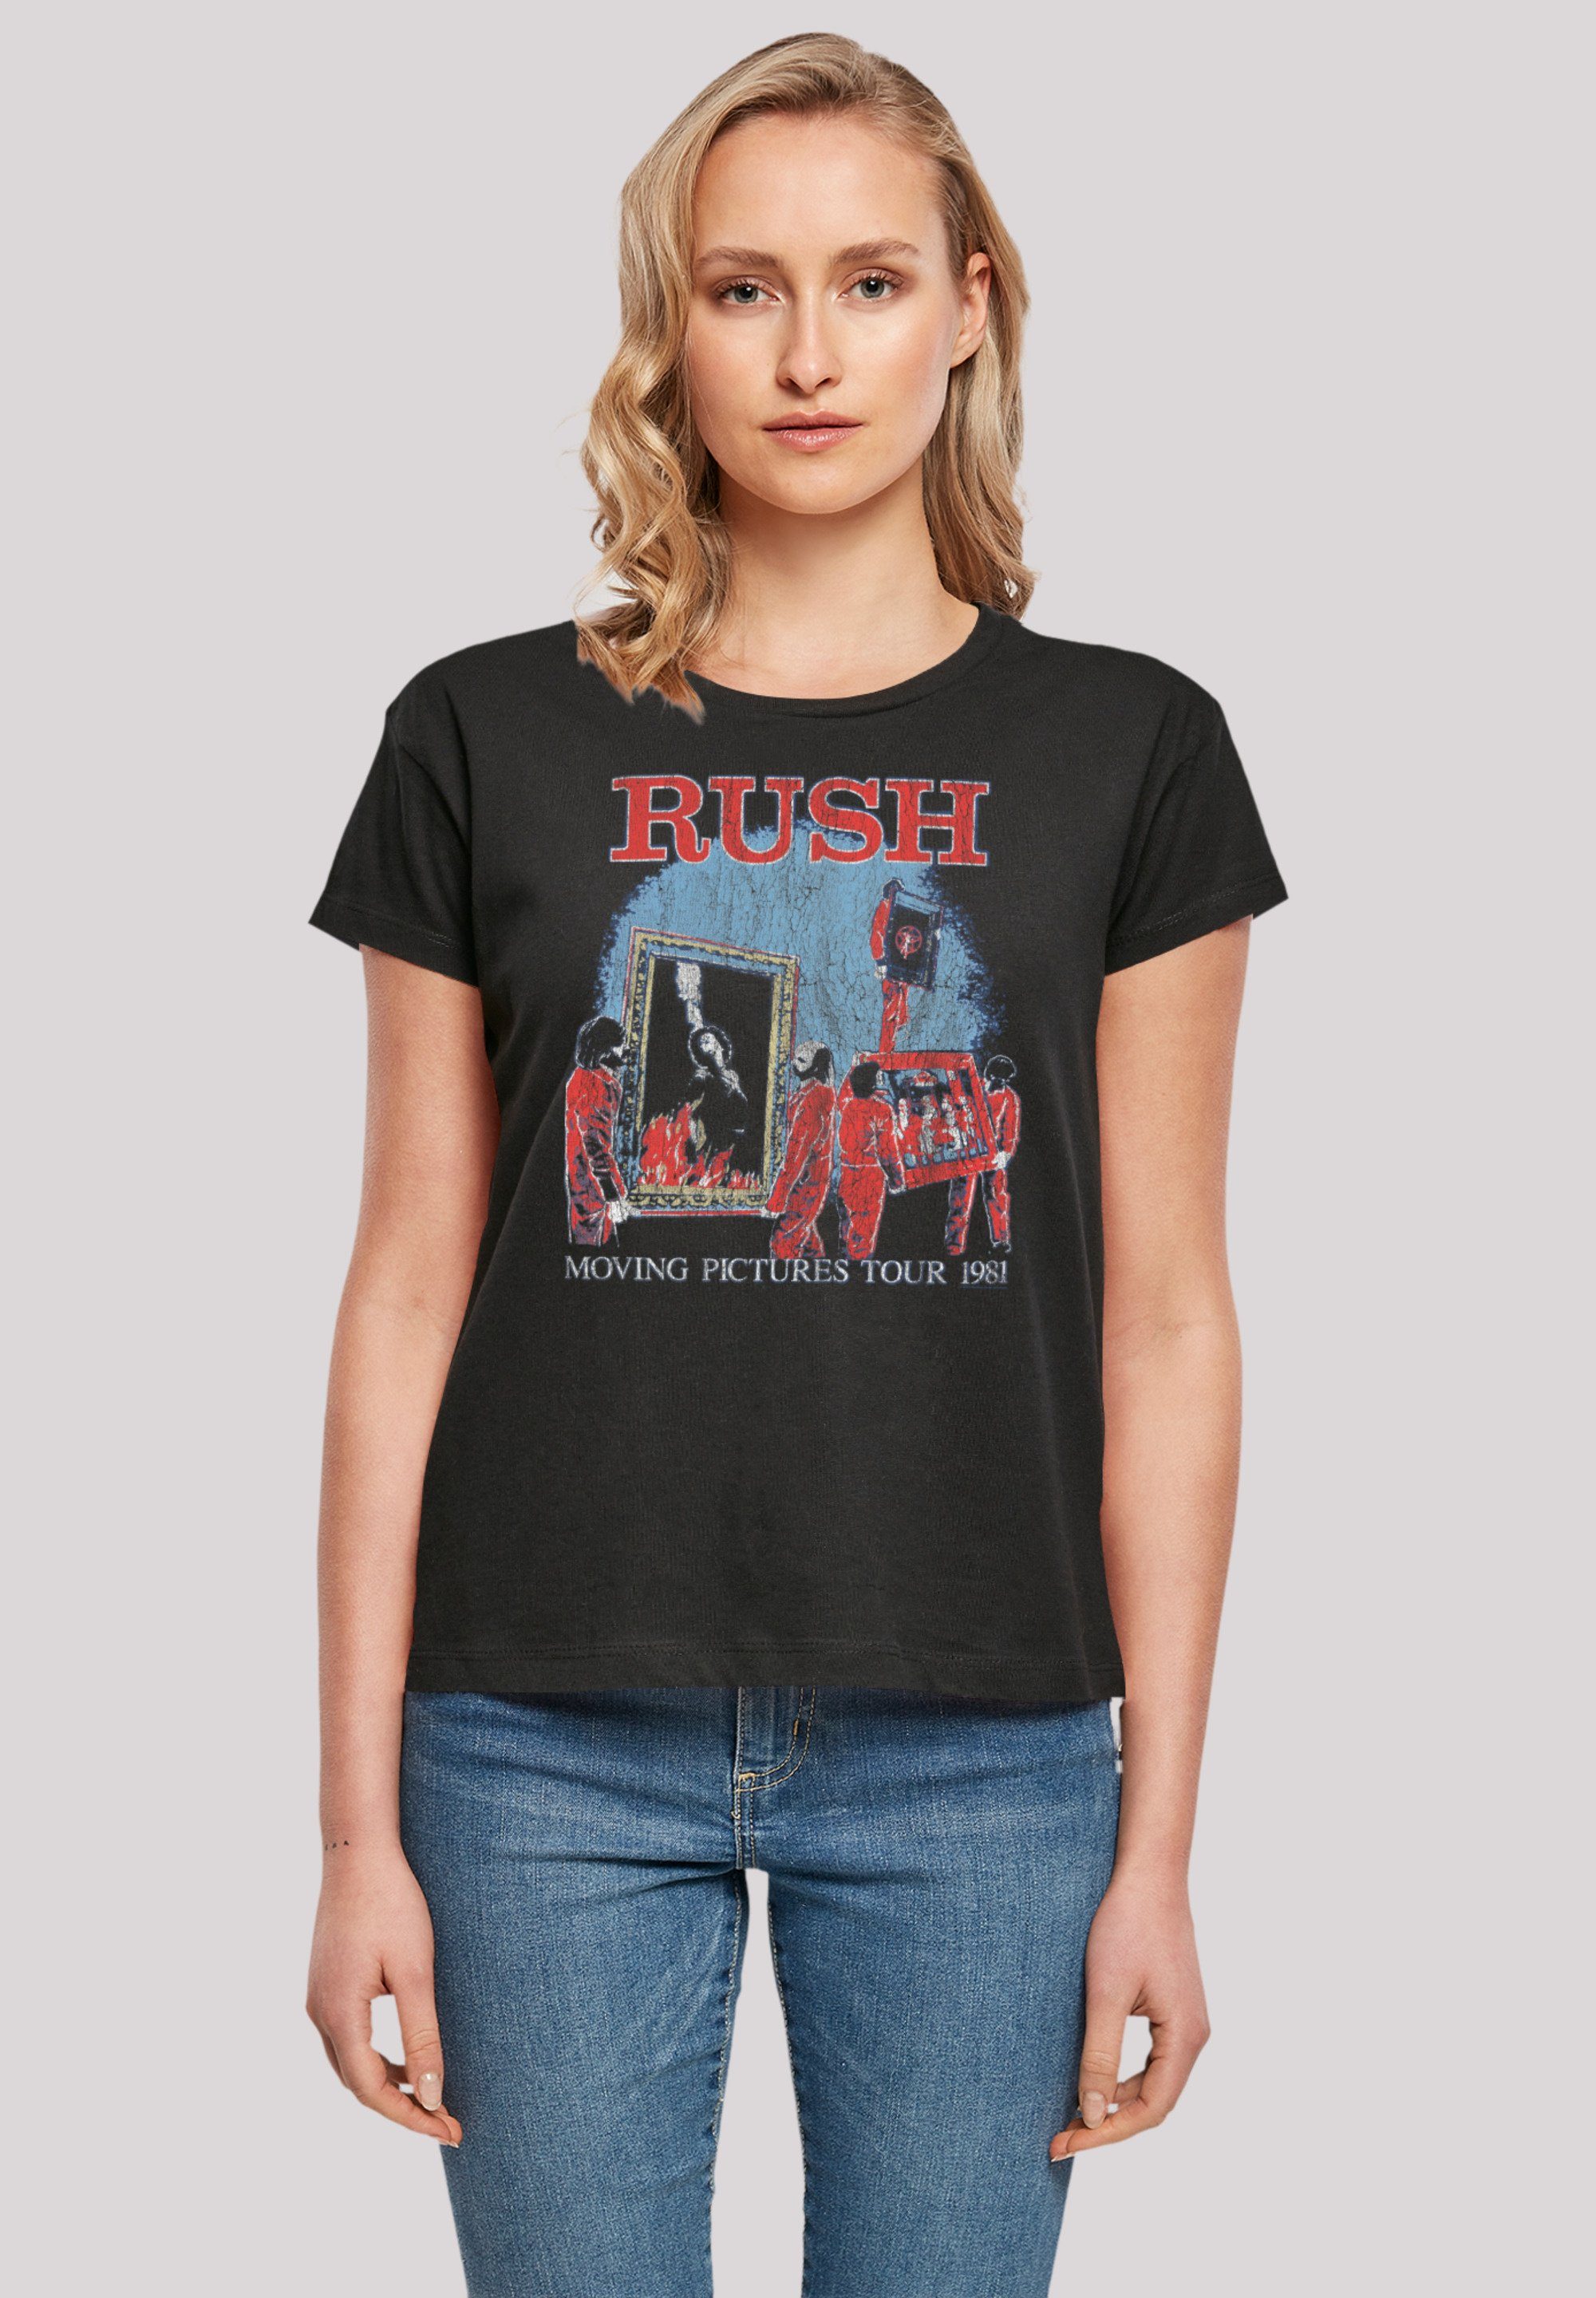 F4NT4STIC T-Shirt Rush Rock Band Moving Pictures Tour Premium Qualität,  Perfekte Passform und hochwertige Verarbeitung